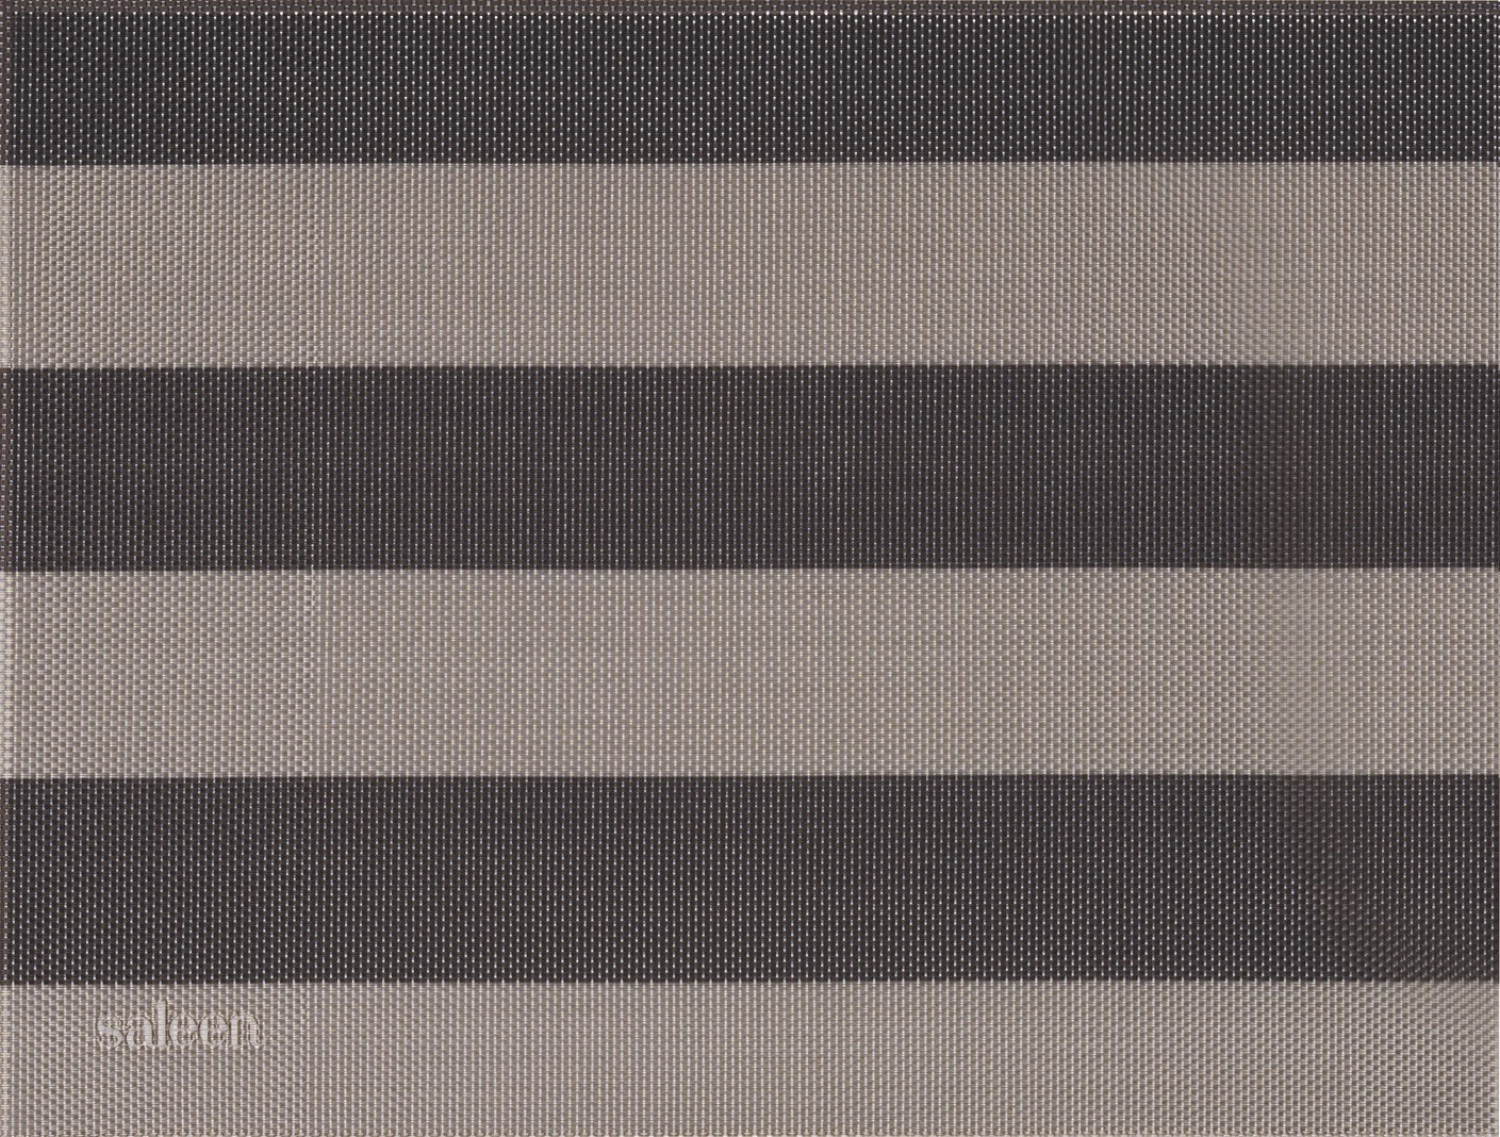 Set de table stripes, carré, beige, marron, 32x42cm